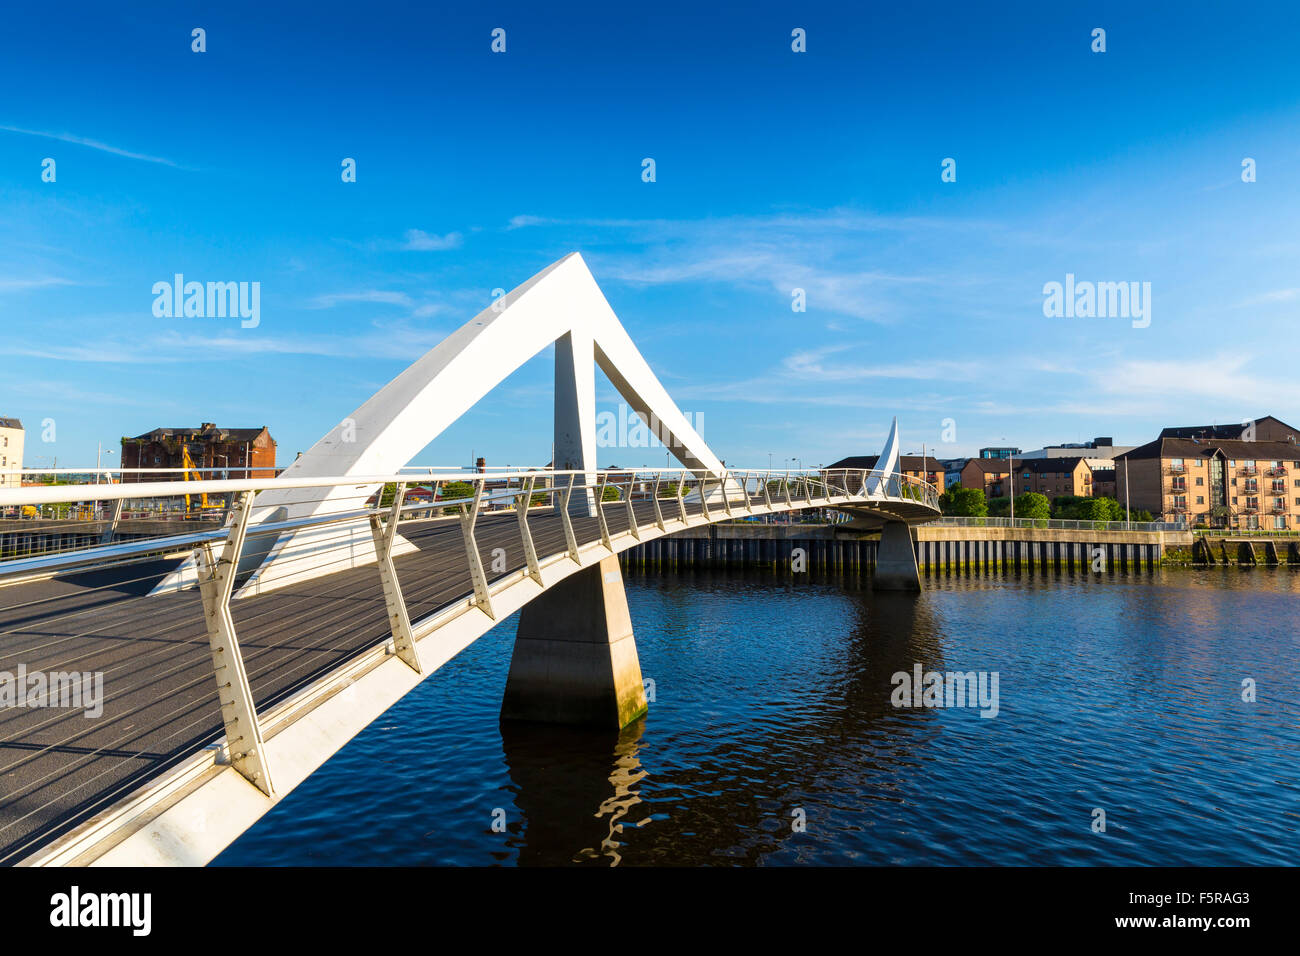 El Puente Tradeston (Tredstoun) conocido como el puente ondulante, un puente peatonal cruzando el río Clyde en Glasgow, Escocia Foto de stock